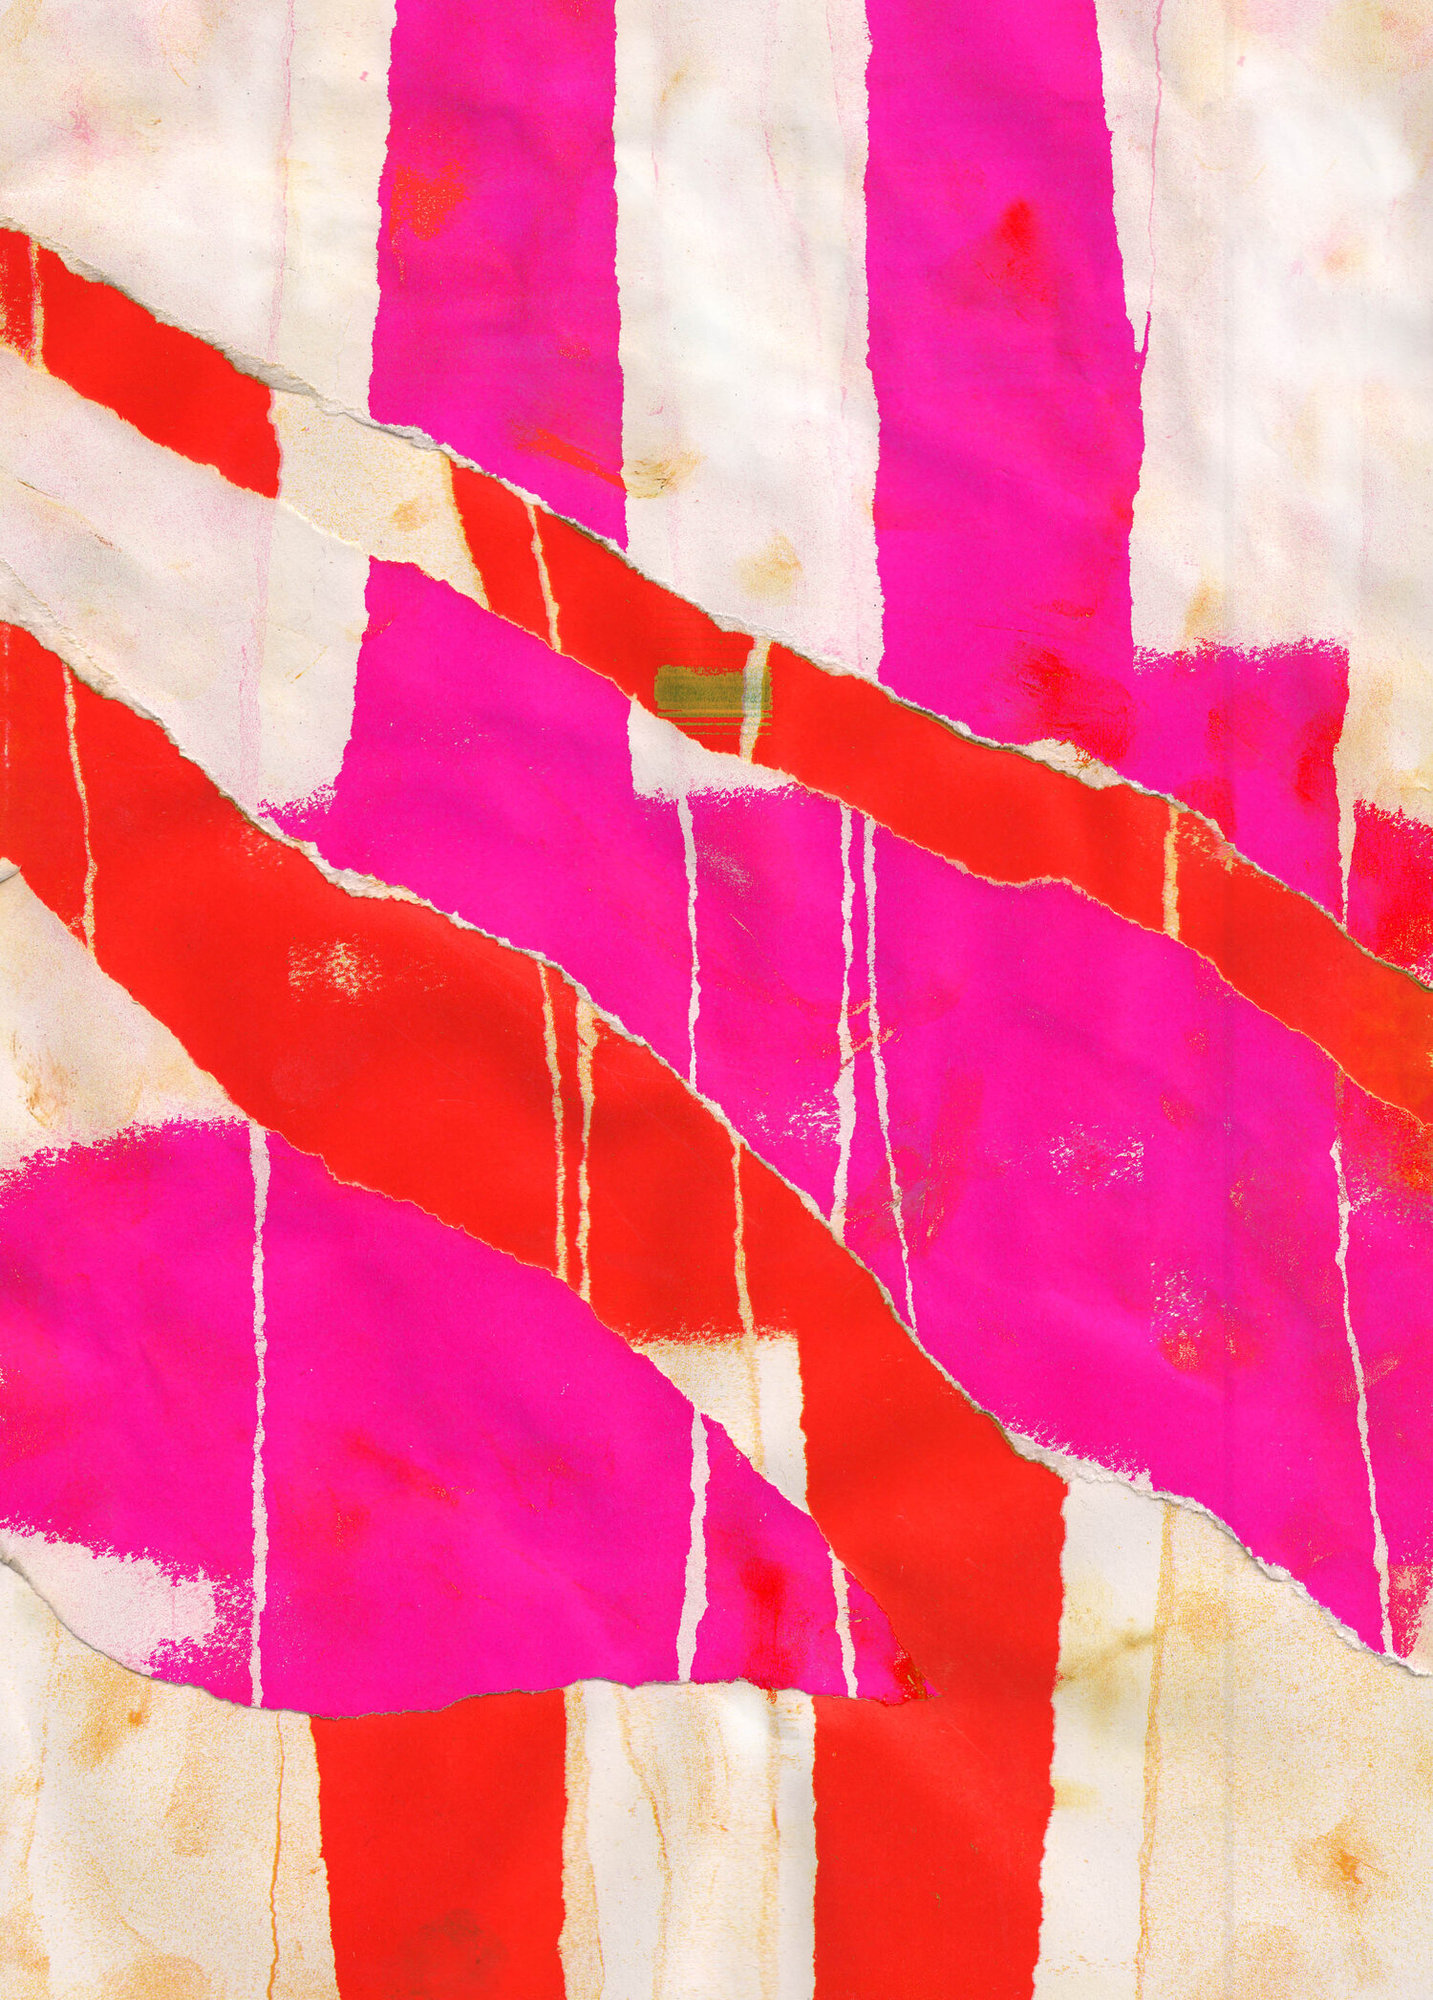 David - Pink Abstract Print